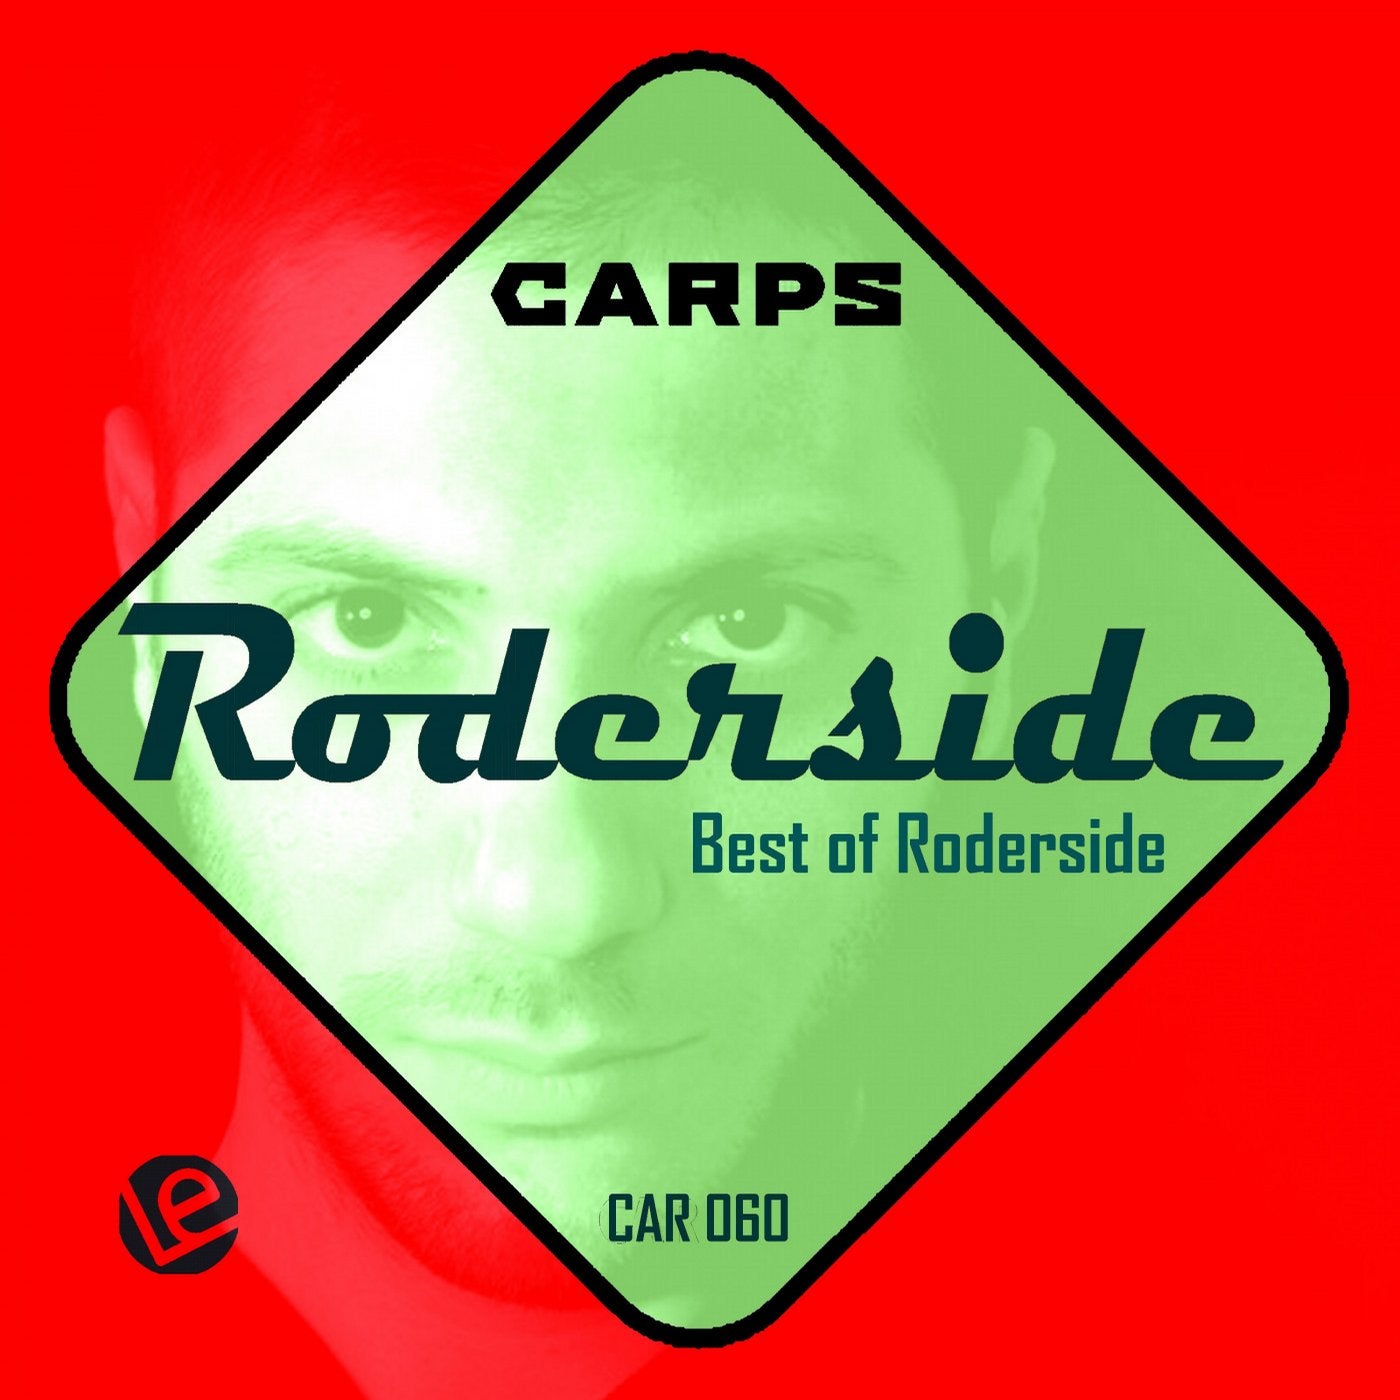 Best of Roderside